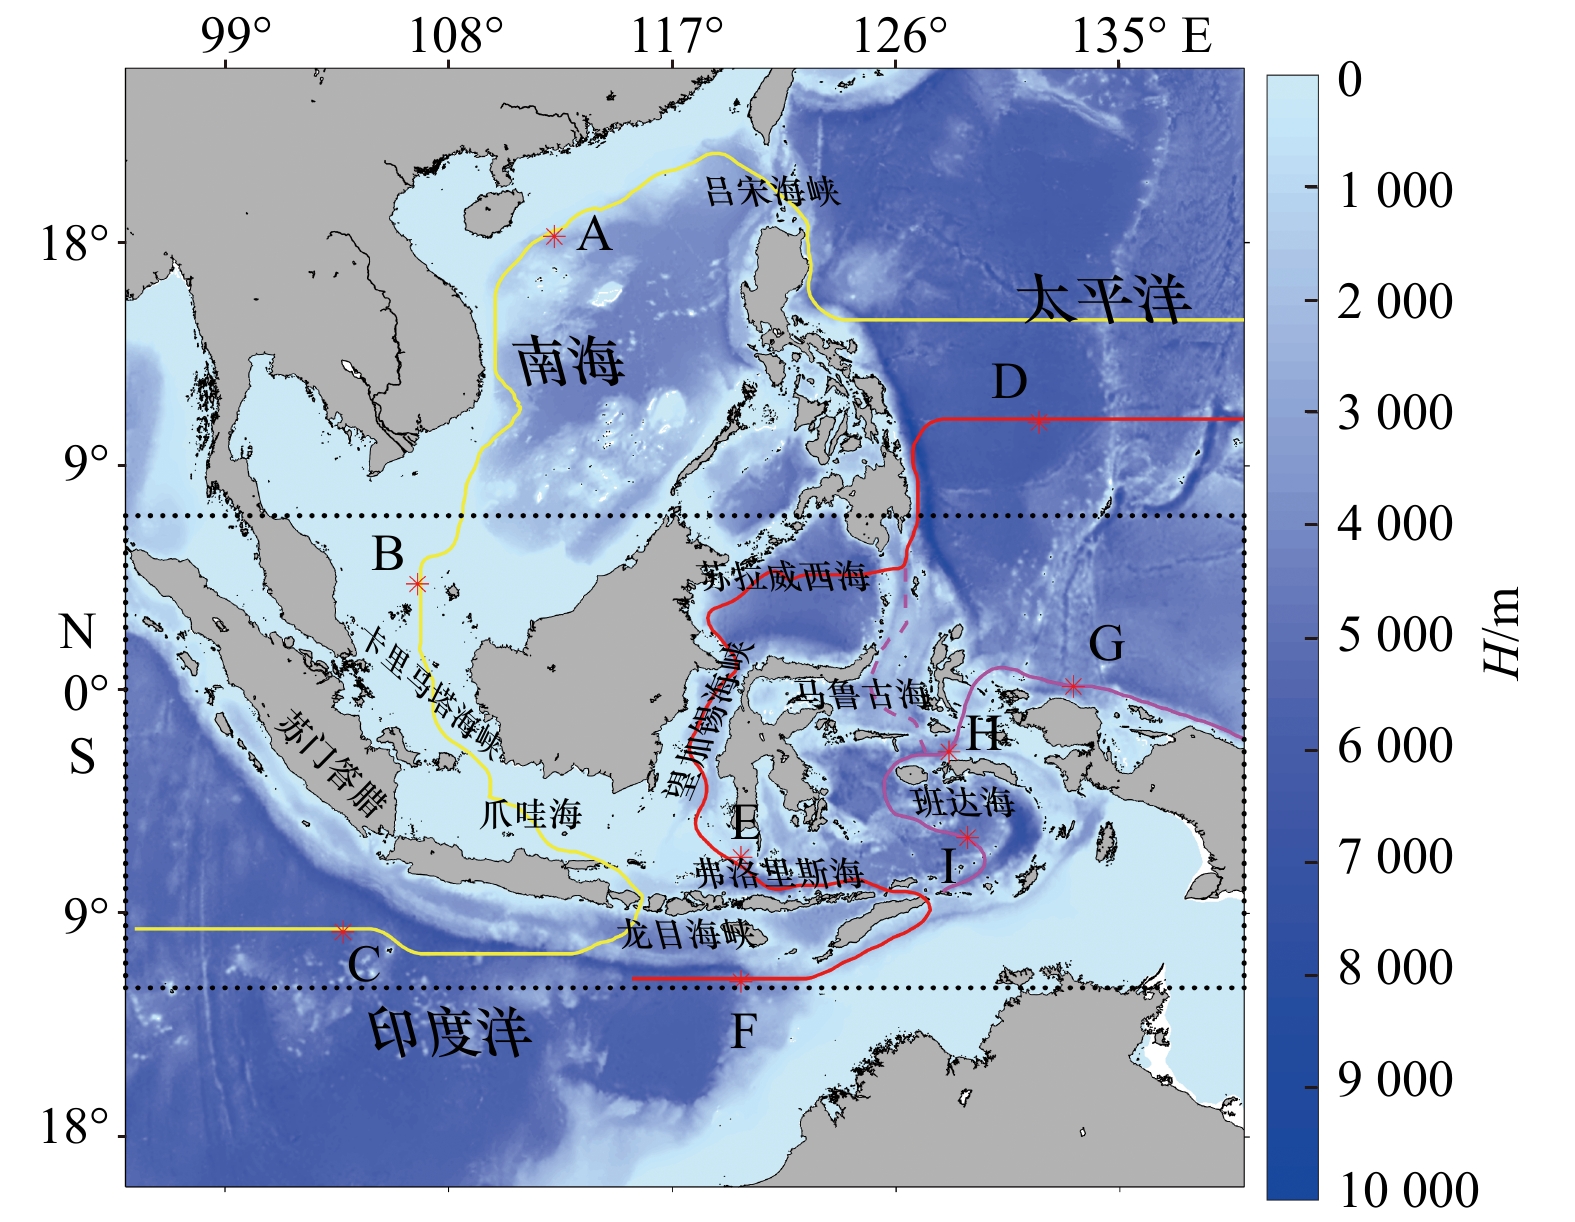 印度尼西亚主要城市分布地图 - 印尼网址大全 - ZNSD.CC|综能时代